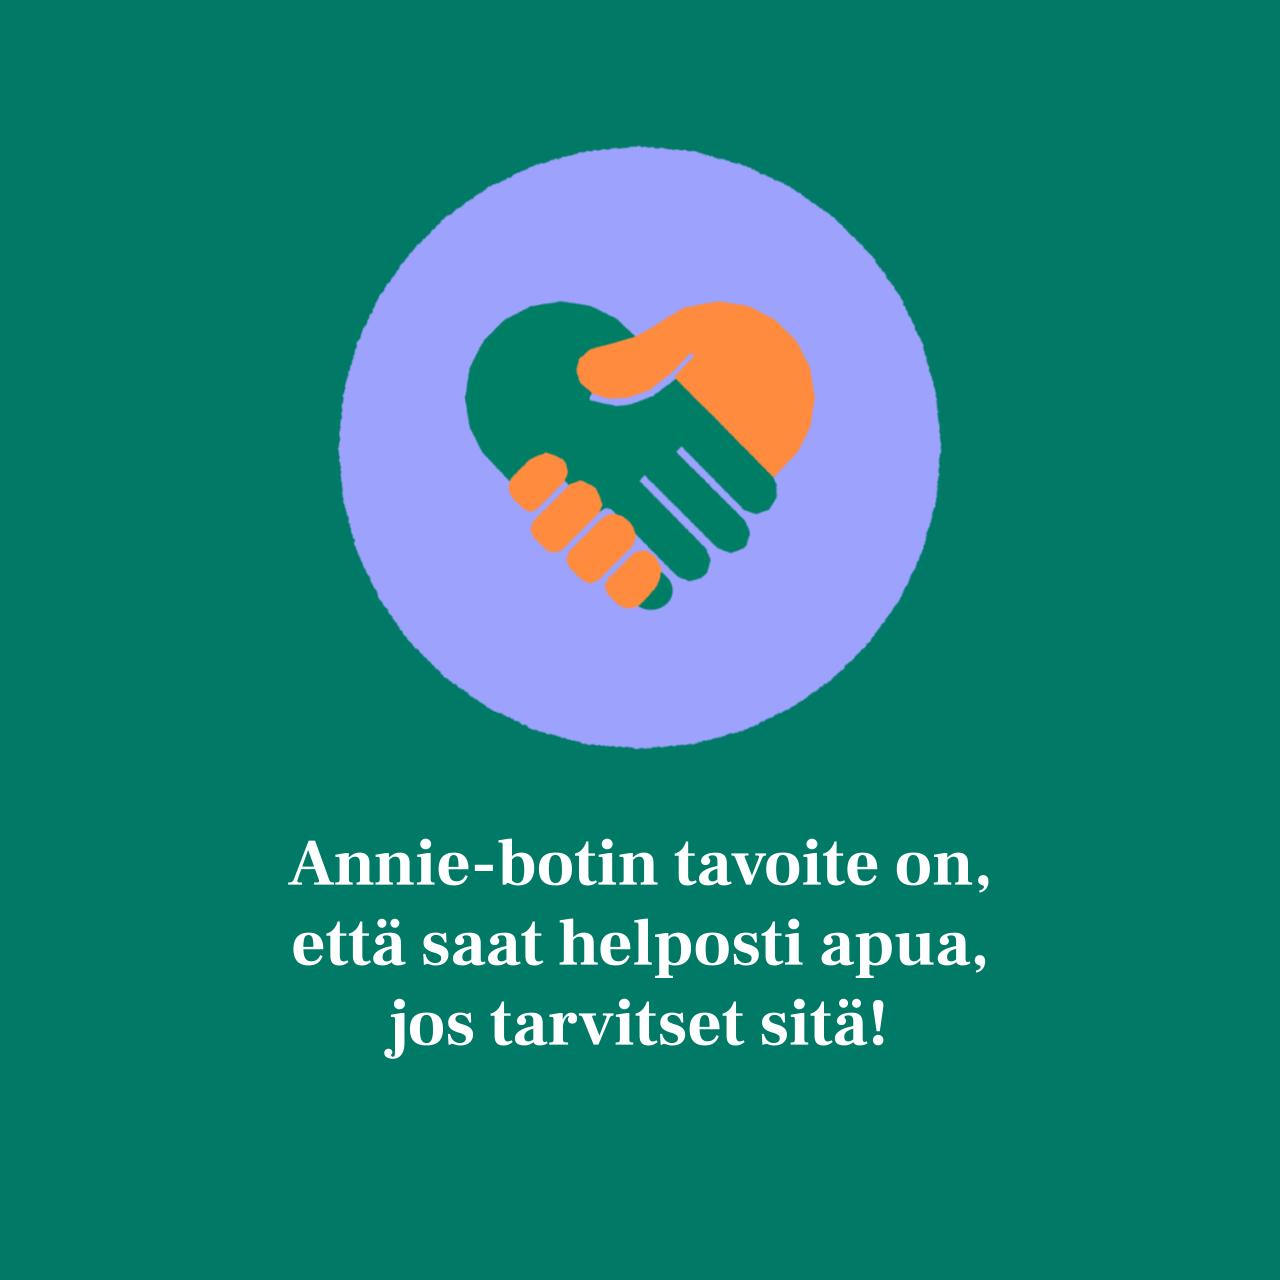 Kuvassa kaksi kättelevää kättä, jotka muodostavat sydämen muodon ja teksti: Annie-botin tavoite on, että saat helposti apua, jos tarvitset sitä!